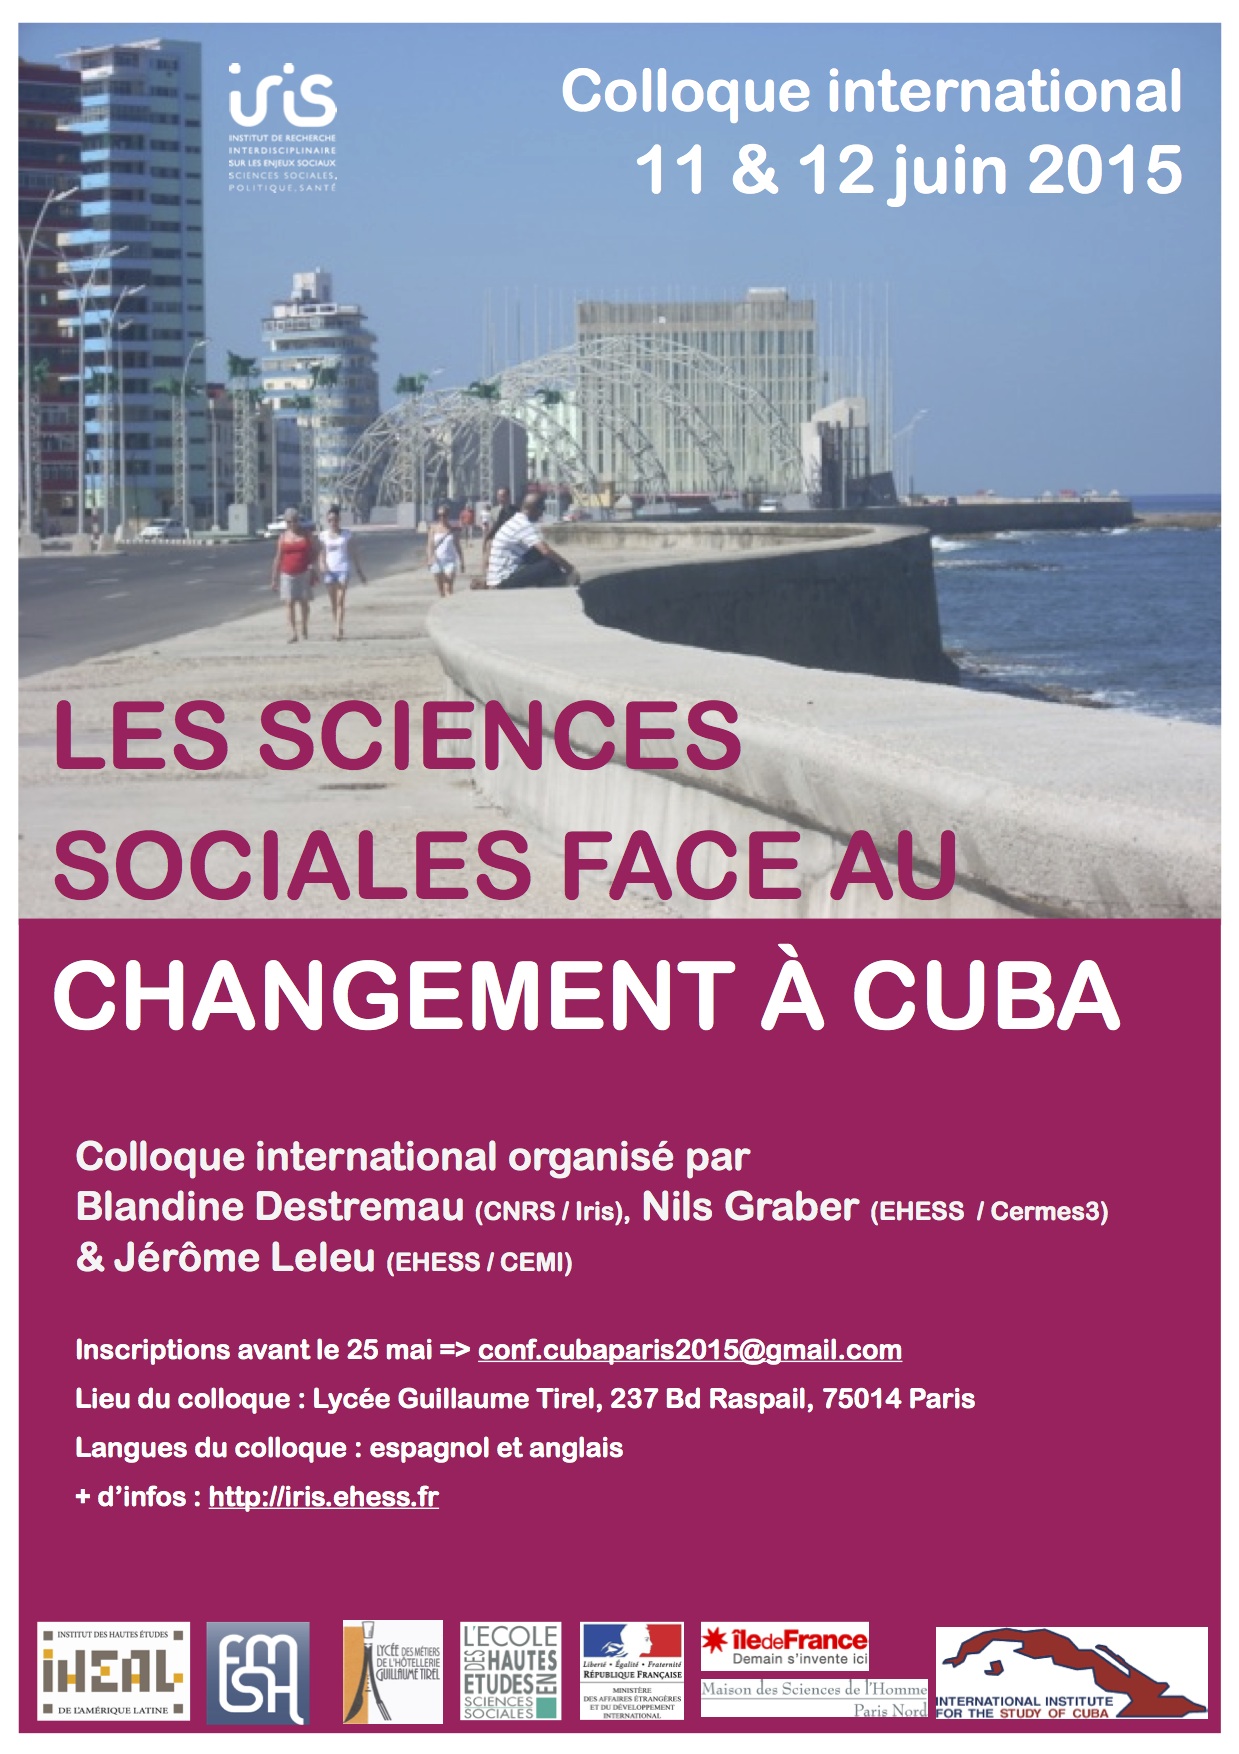 Les sciences sociales face au changement à Cuba